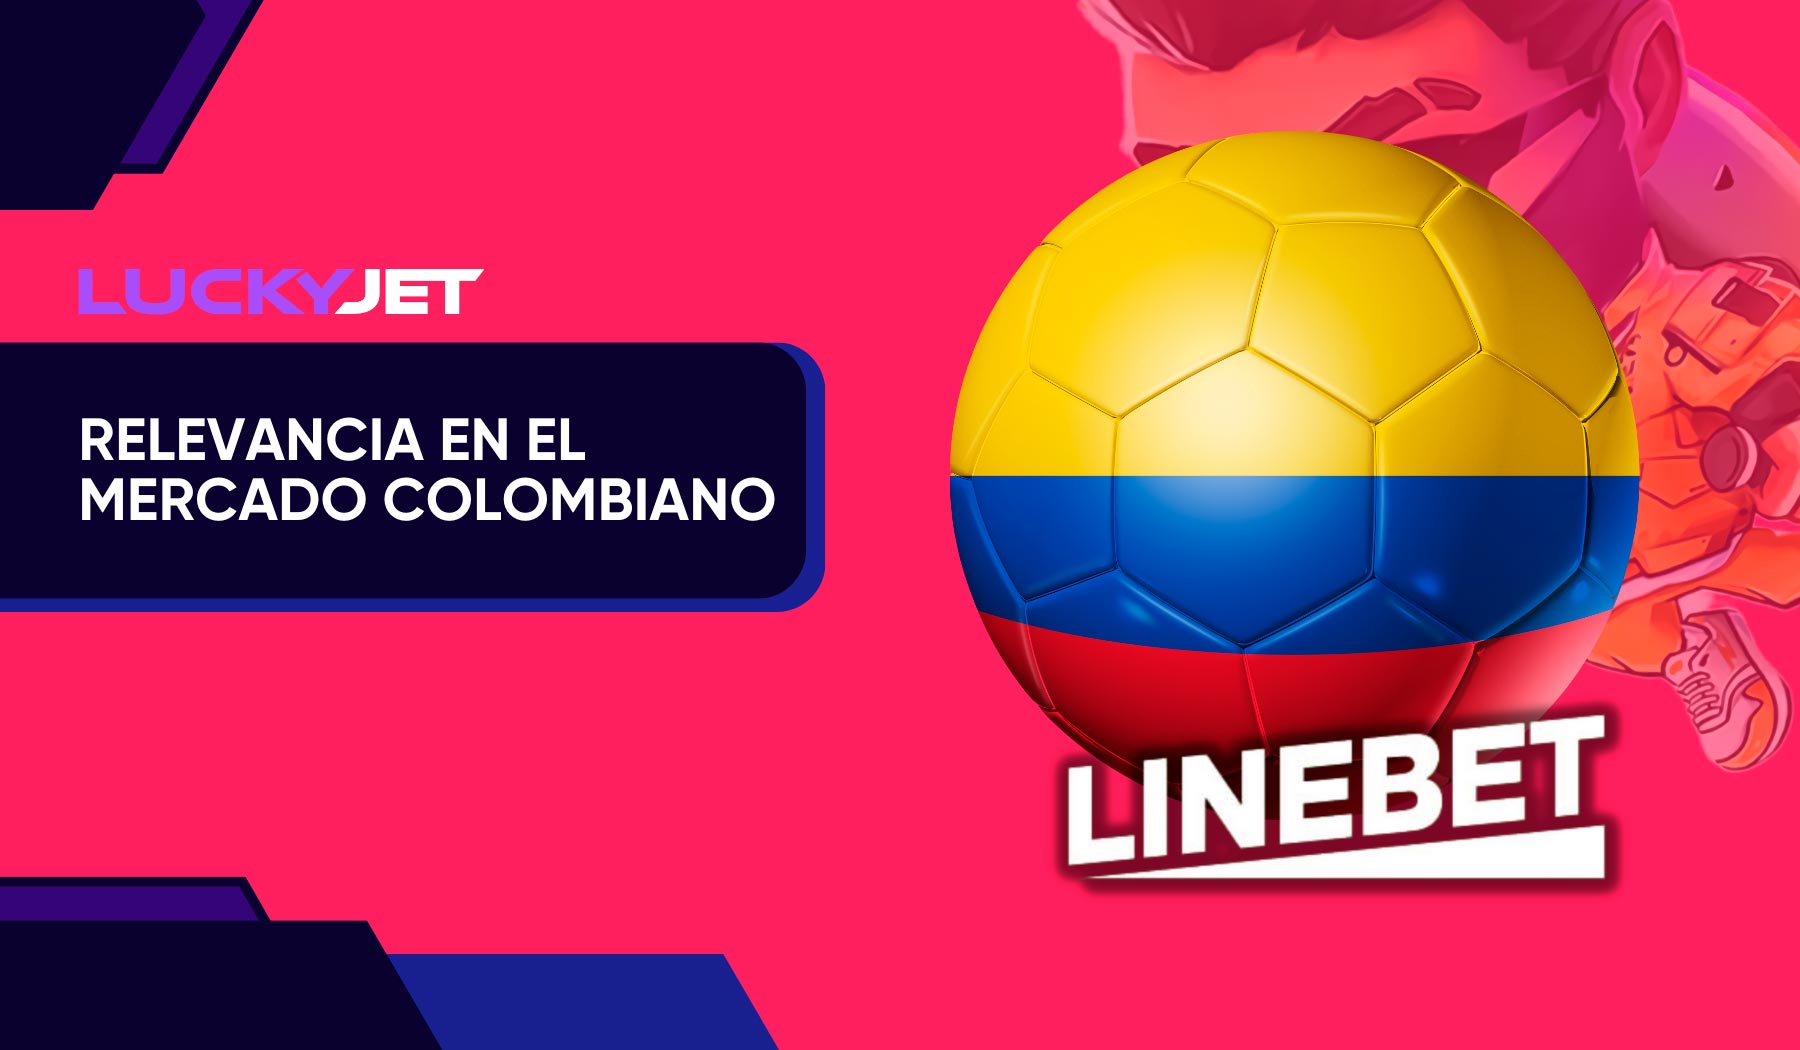 Linebet Jet Parimatch en el mercado colombiano